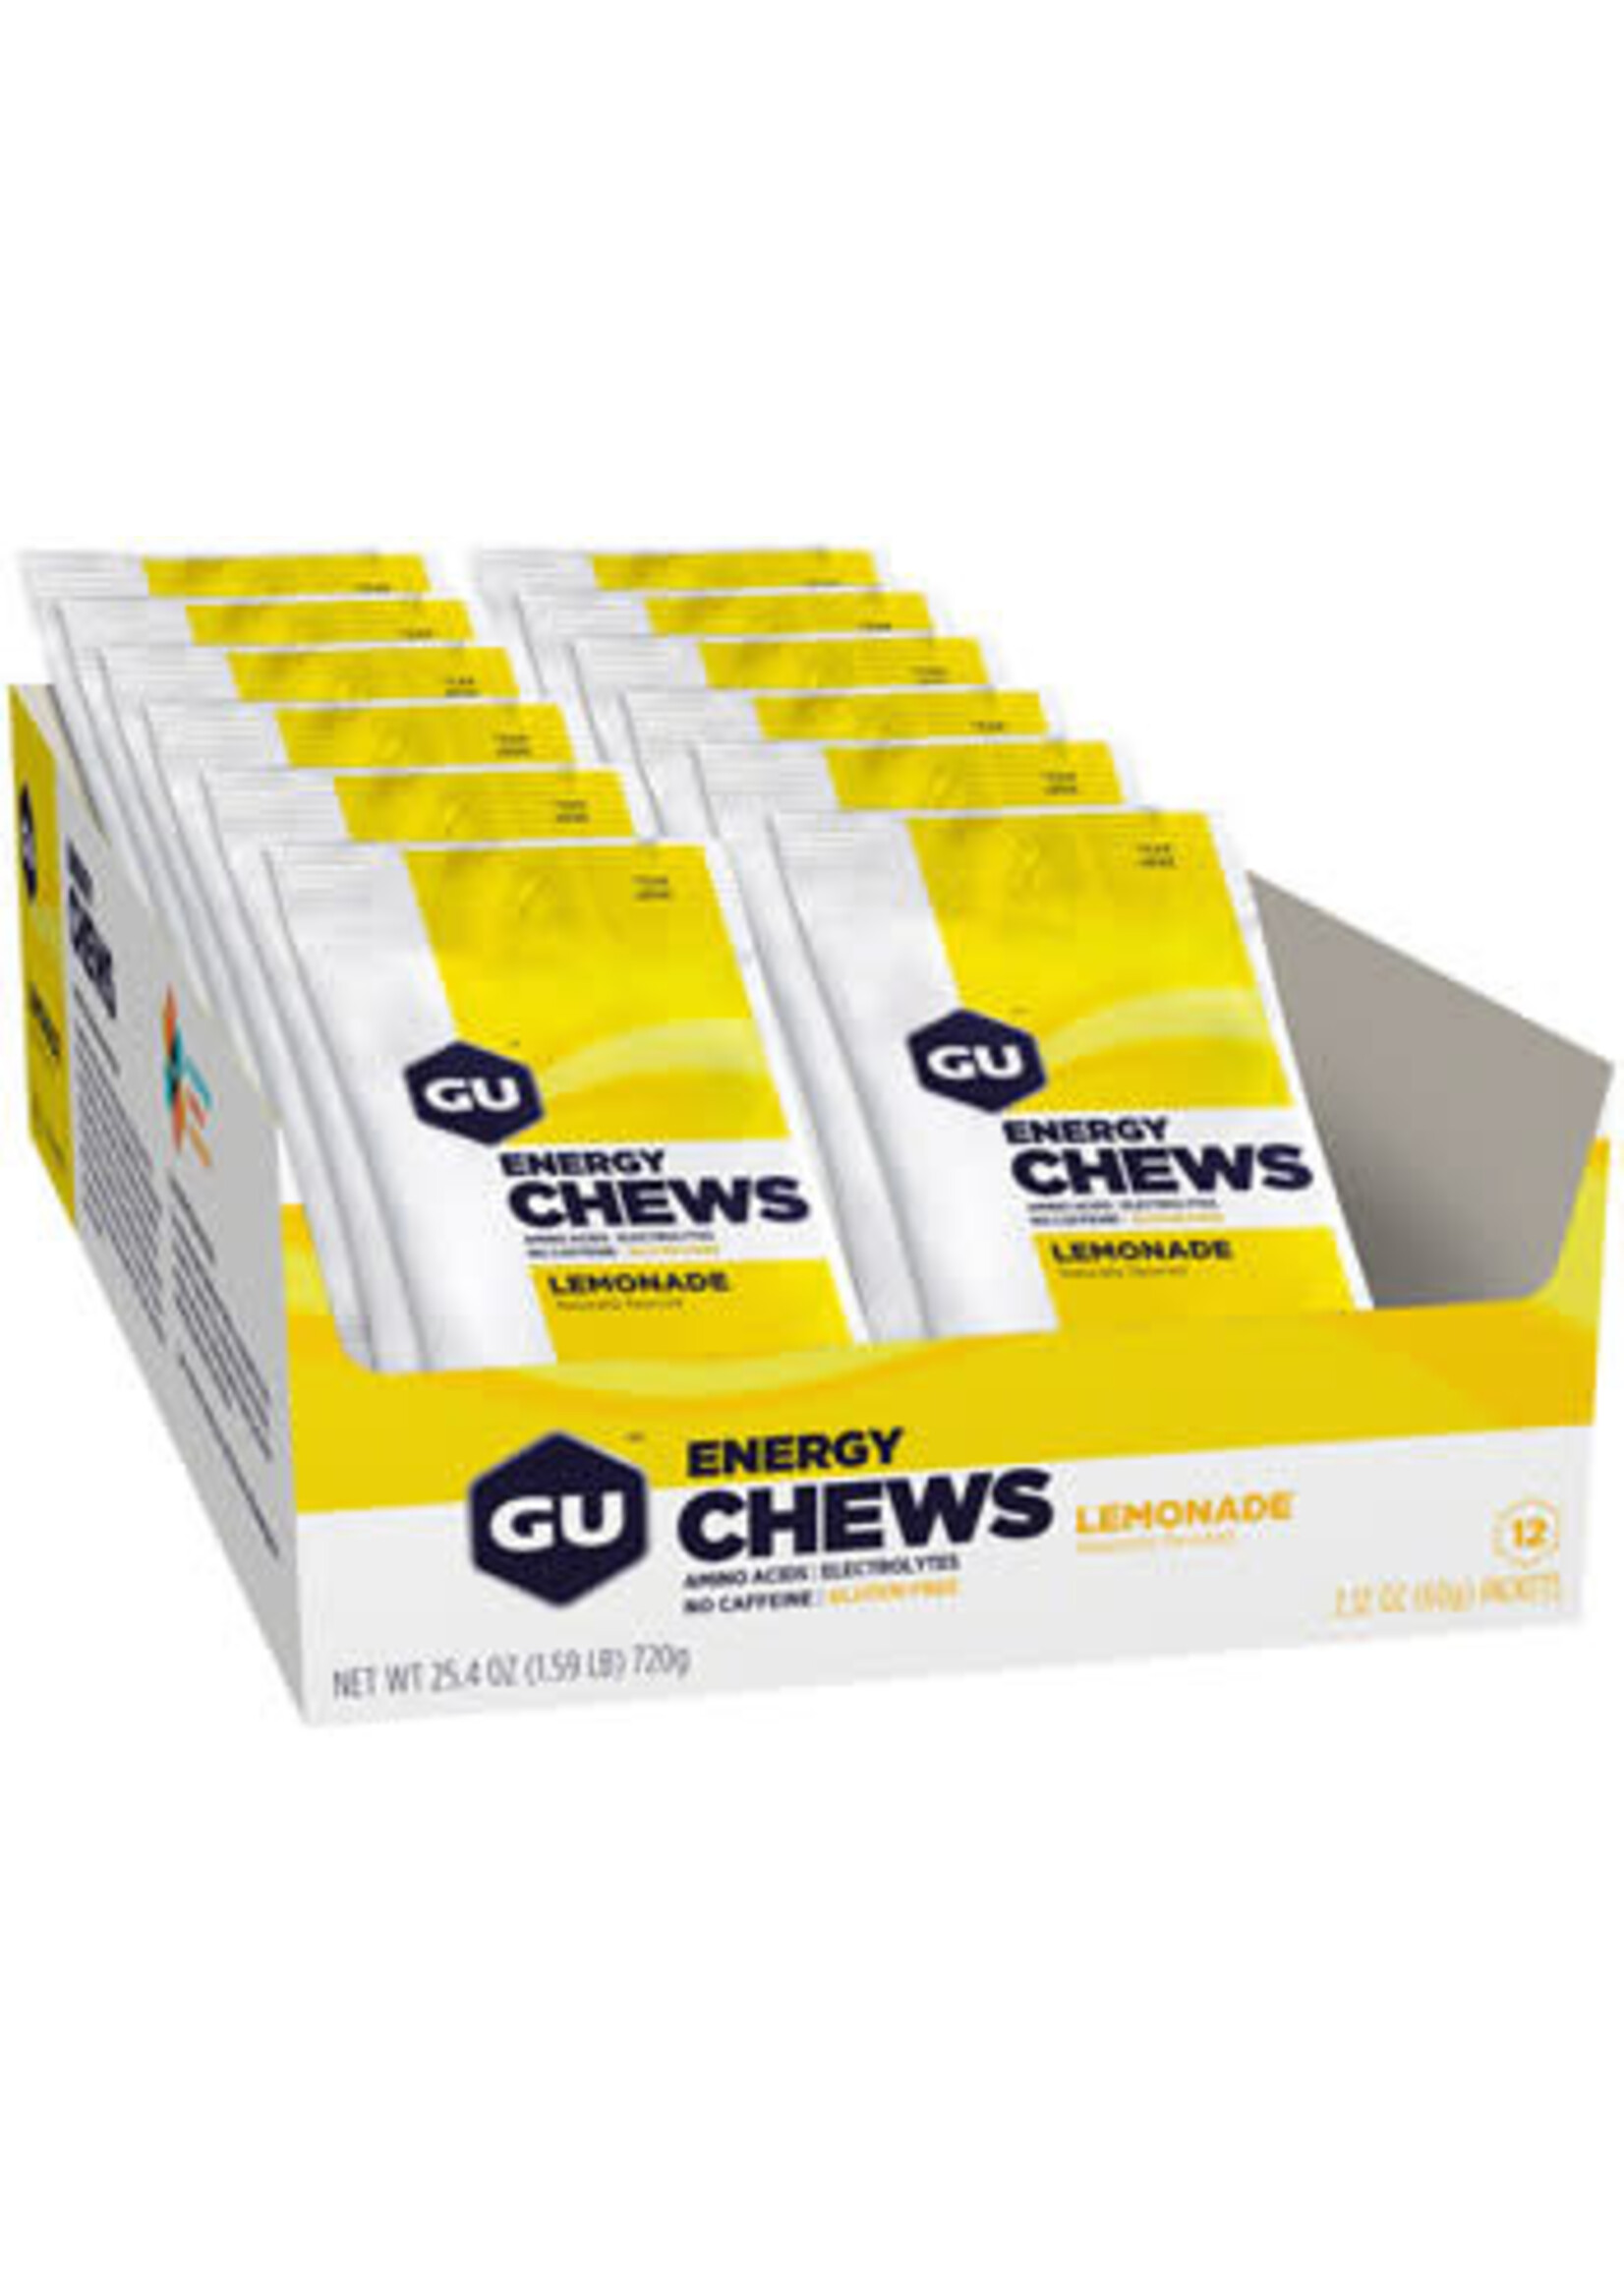 GU GU Chews: Multiple Flavors and Sizes